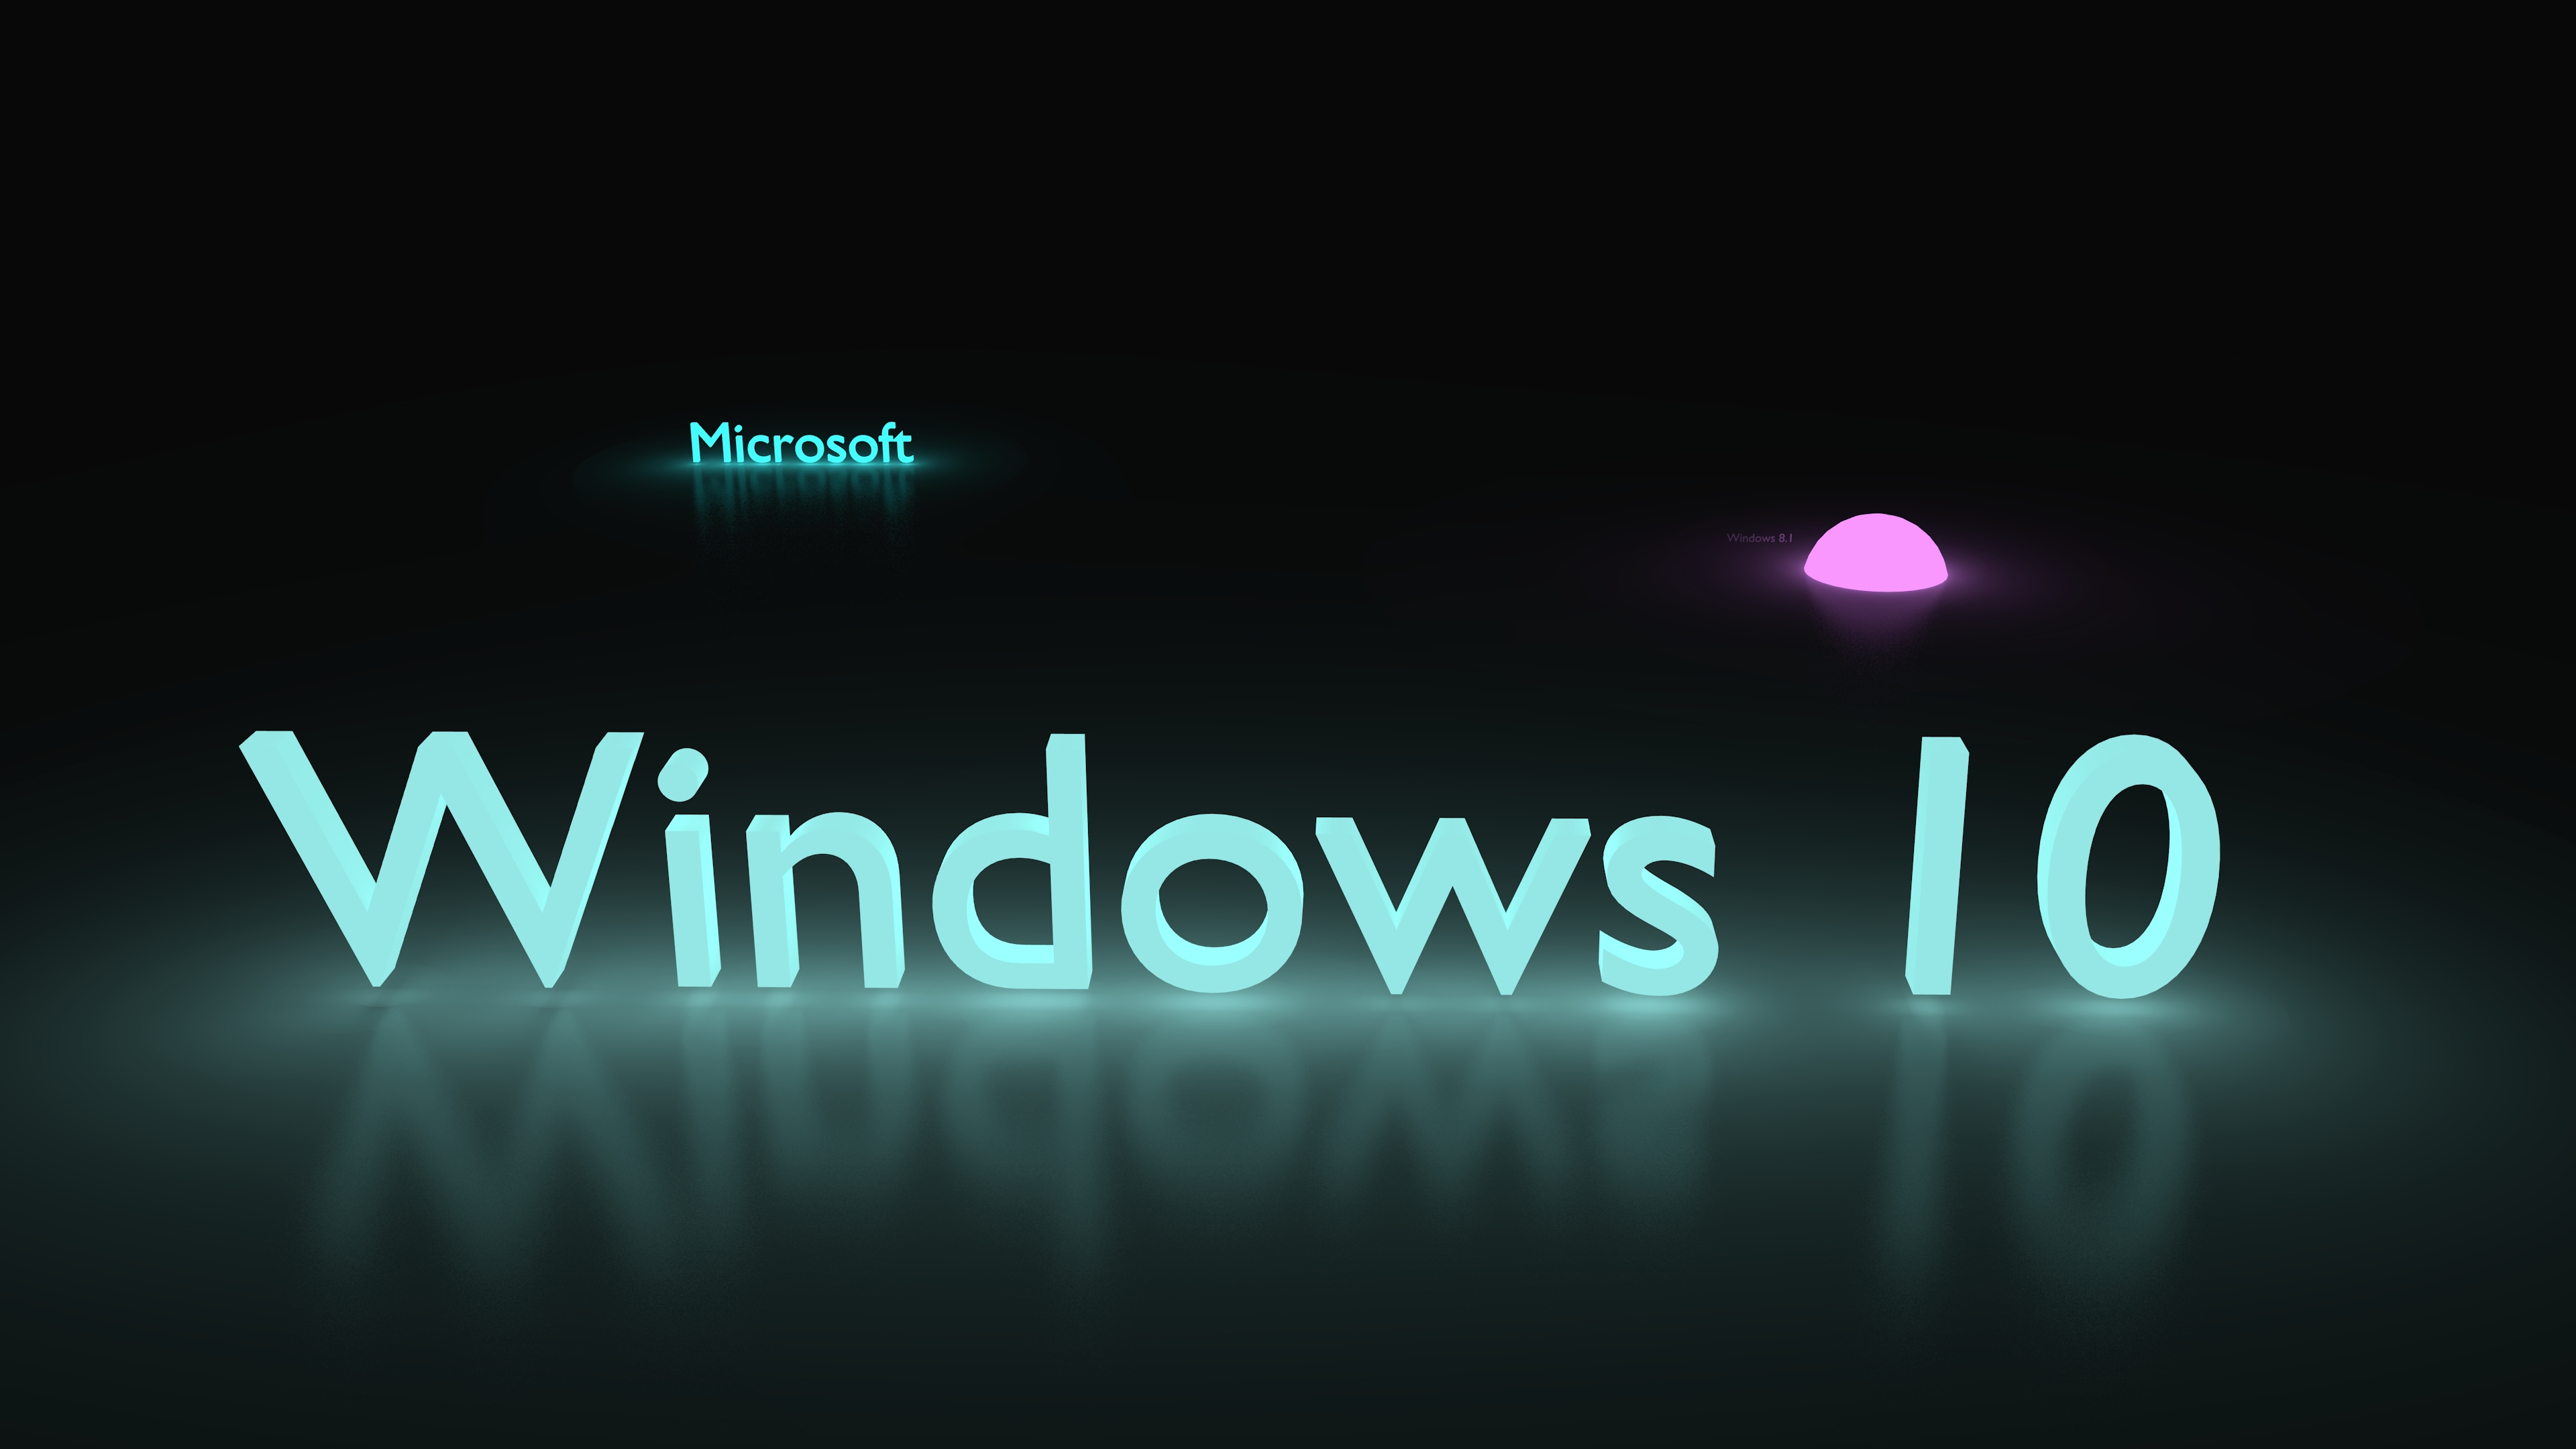 Windows 10 3840x2160